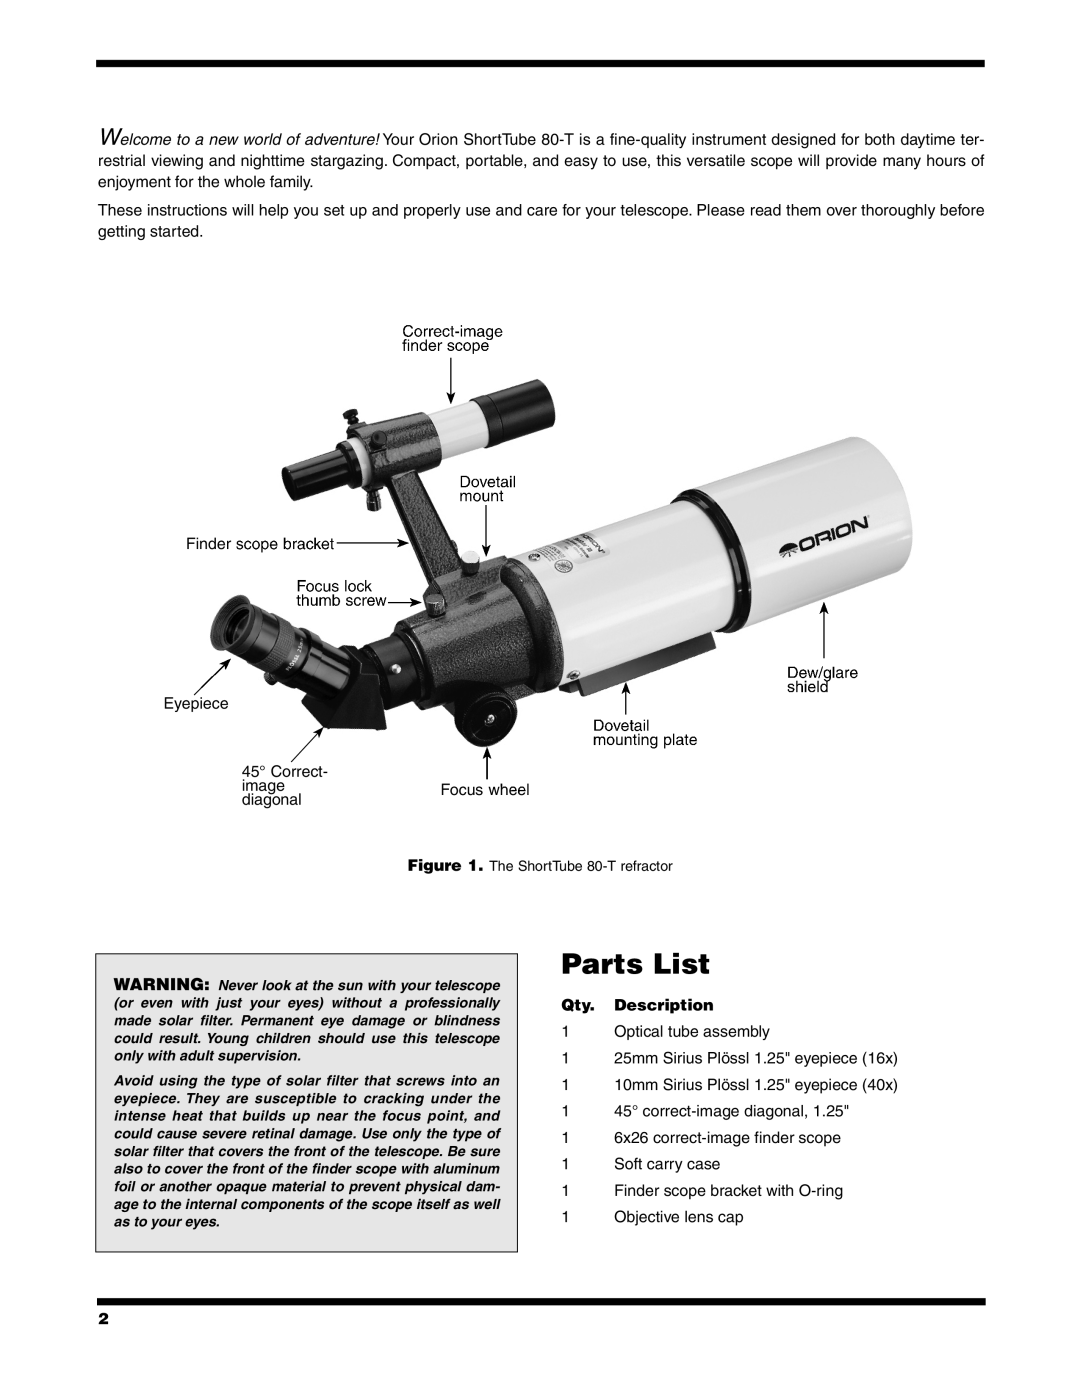 Orion 80-T instruction manual Parts List, Qty. Description 